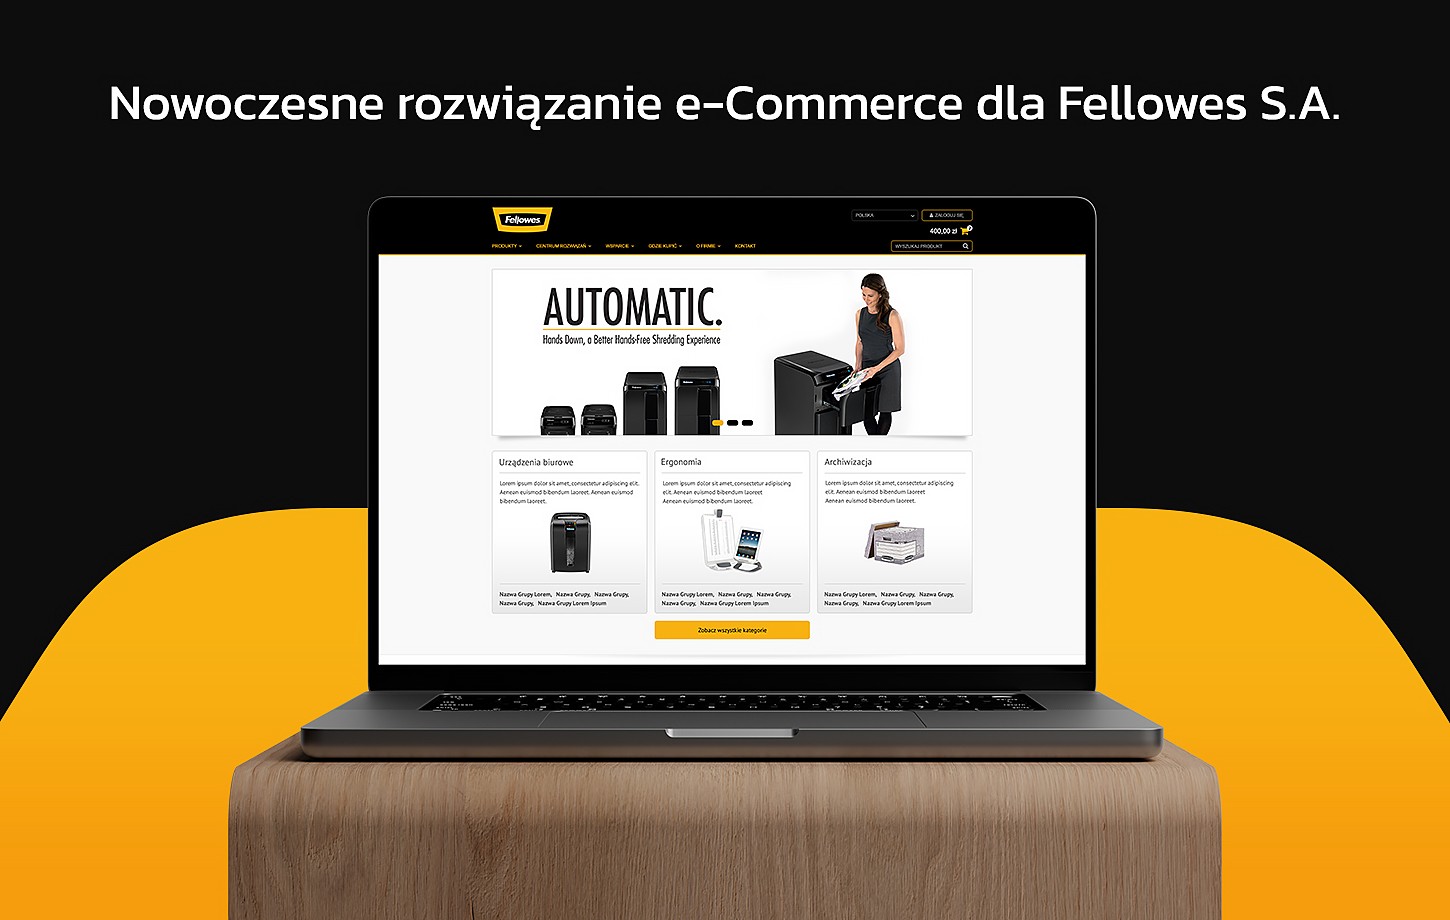 Fellowes - nowoczesne rozwiązanie e-commerce